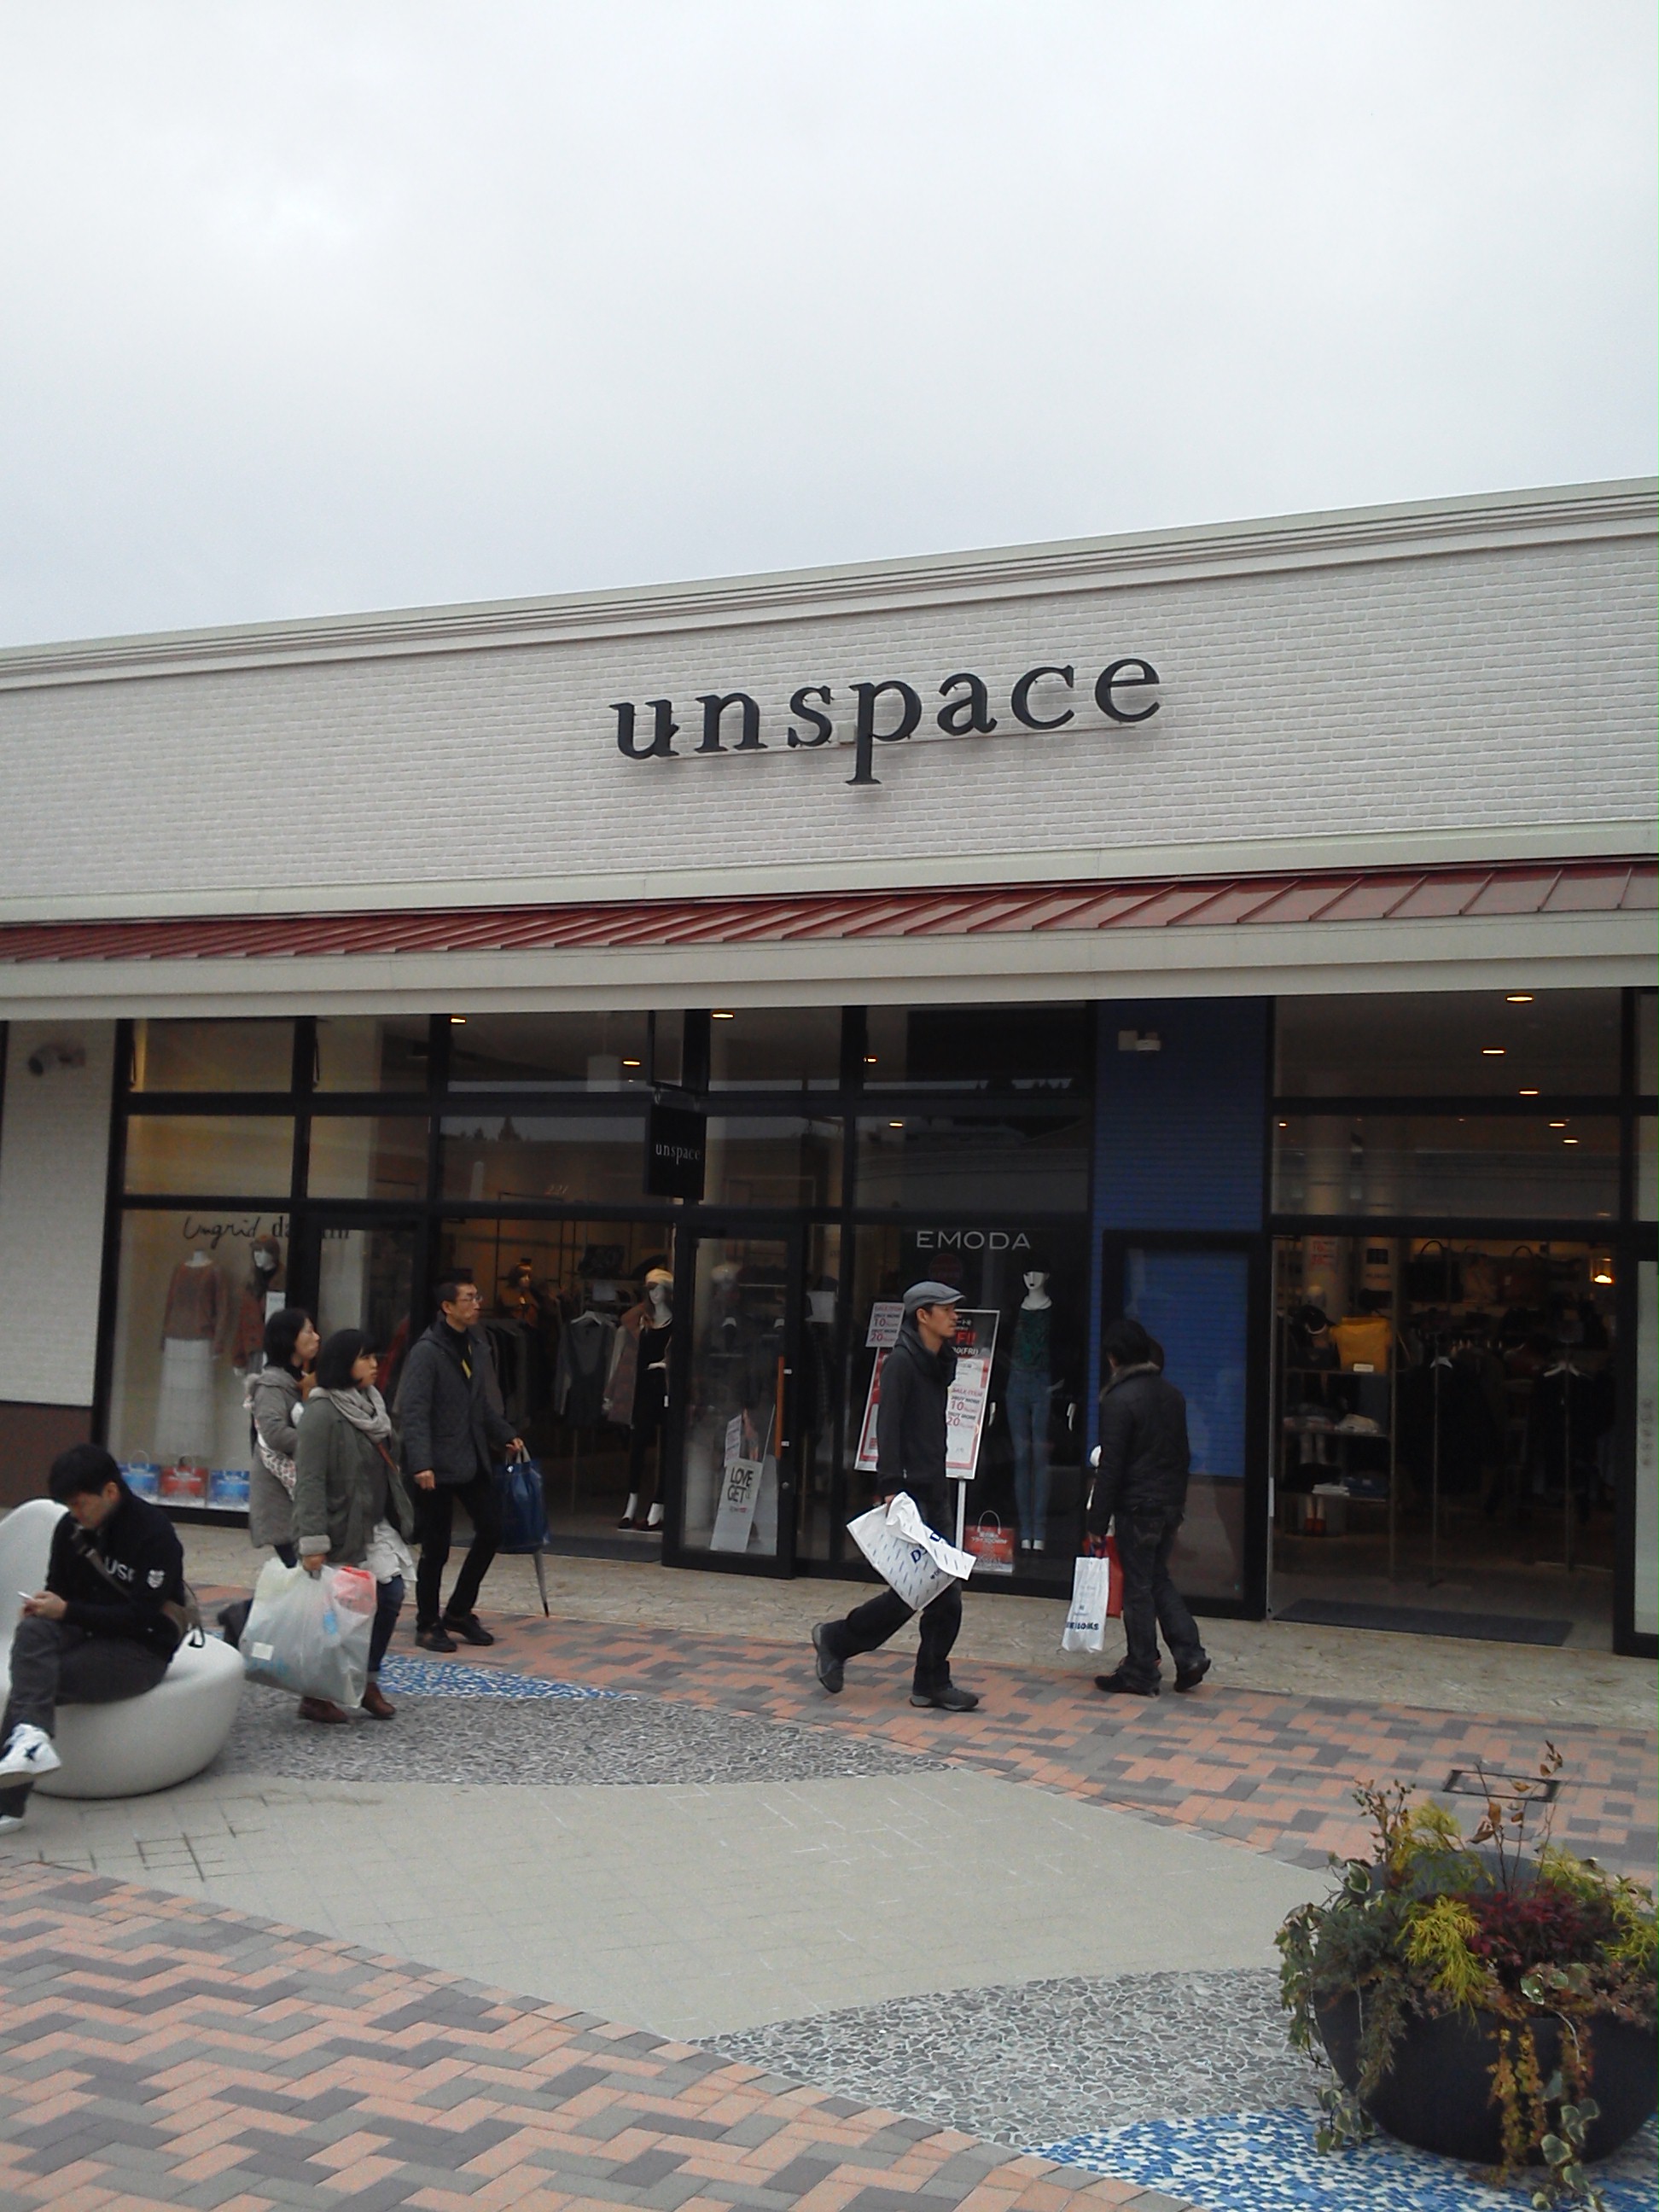 アンスペース unspace 那須ガーデンアウトレットの店舗